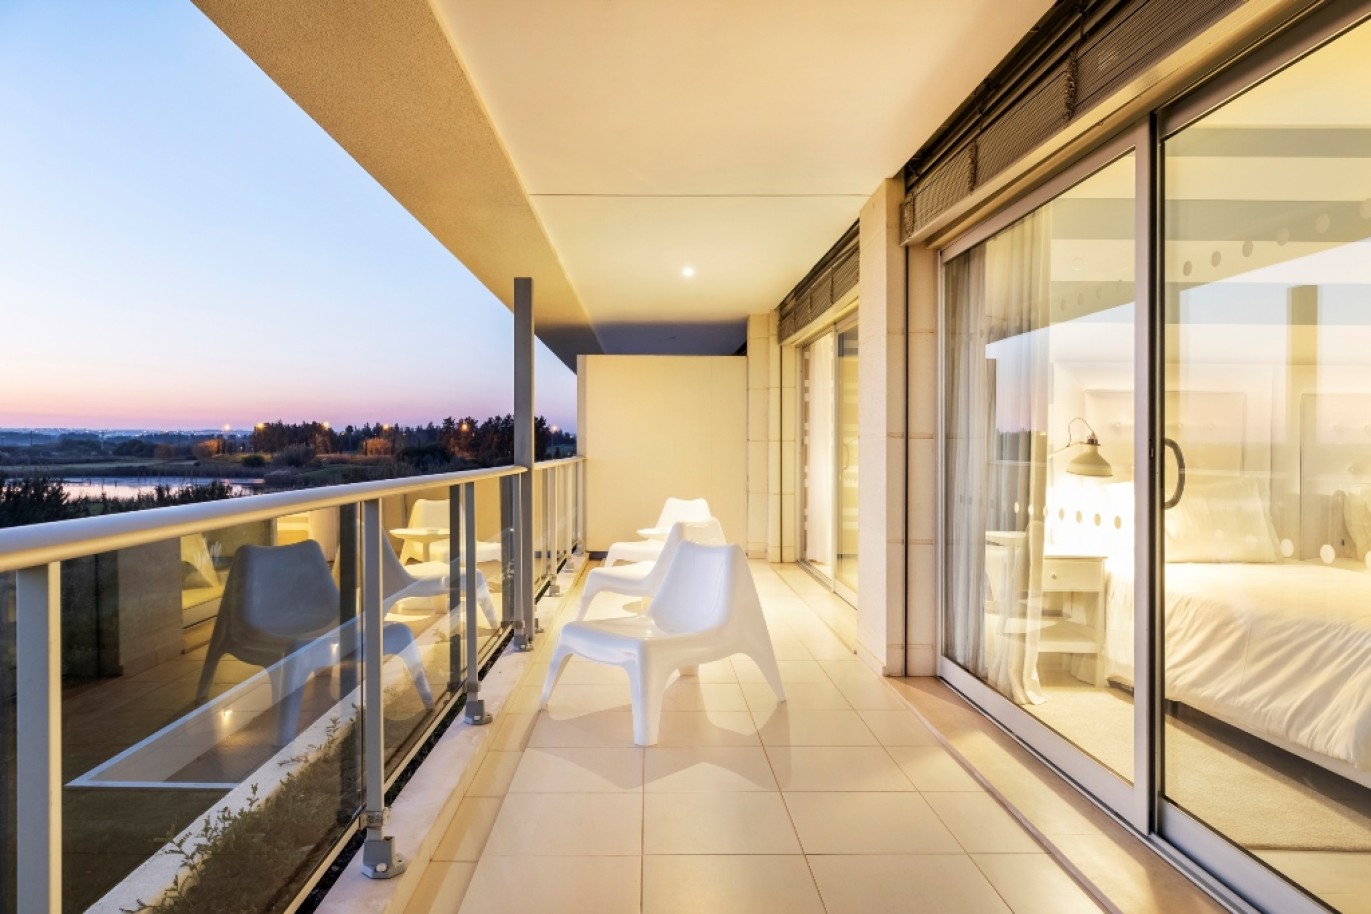 Moderno Duplex em Resort com piscina, para venda Vilamoura, Algarve_252298